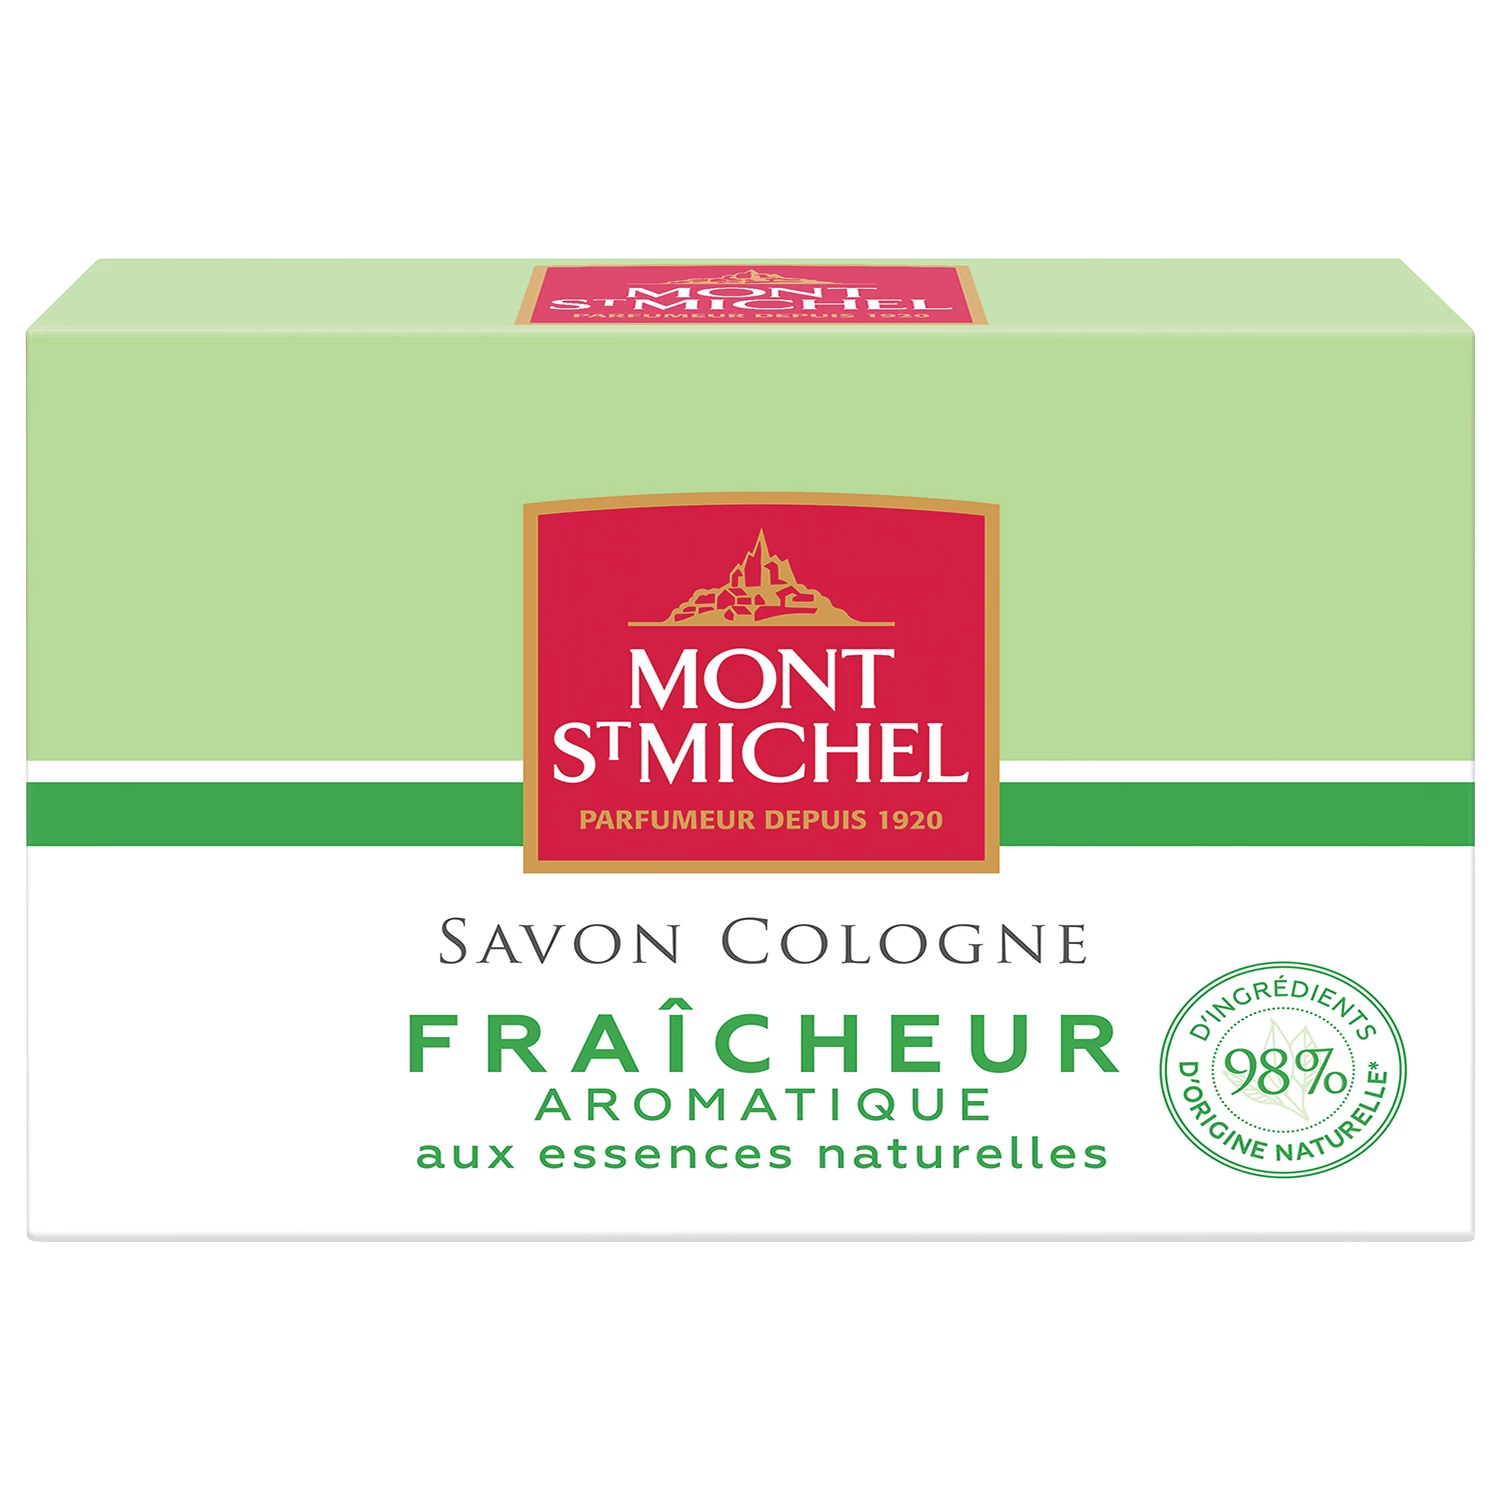 Savon Cologne fraîcheur aromatique 125g - MONT ST MICHEL